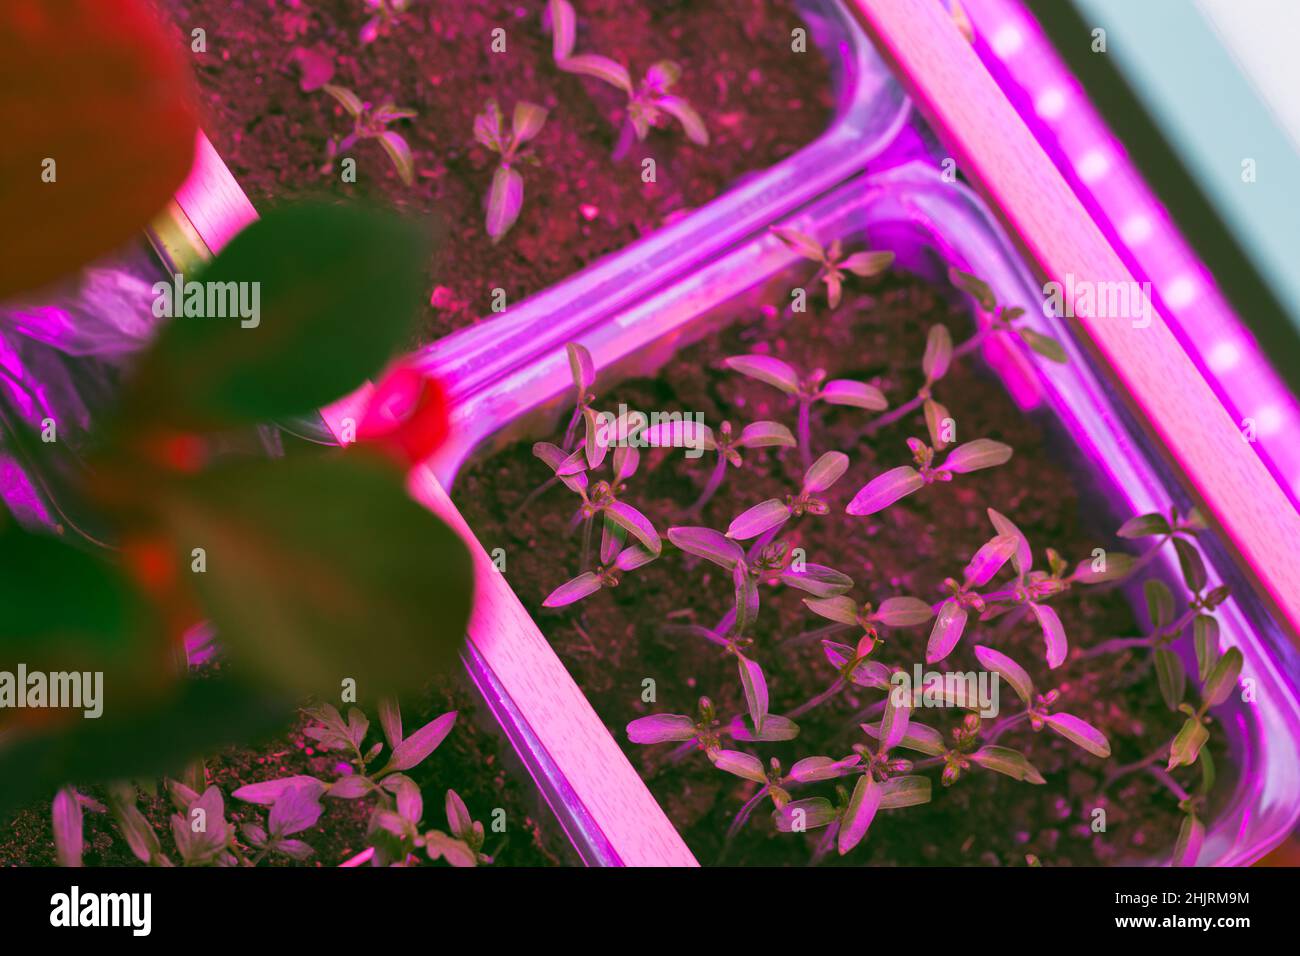 Piantine di piante crescono in scatole di plastica sotto illuminazione phito lampada. Vista dall'alto. Agricoltura indoor Foto Stock